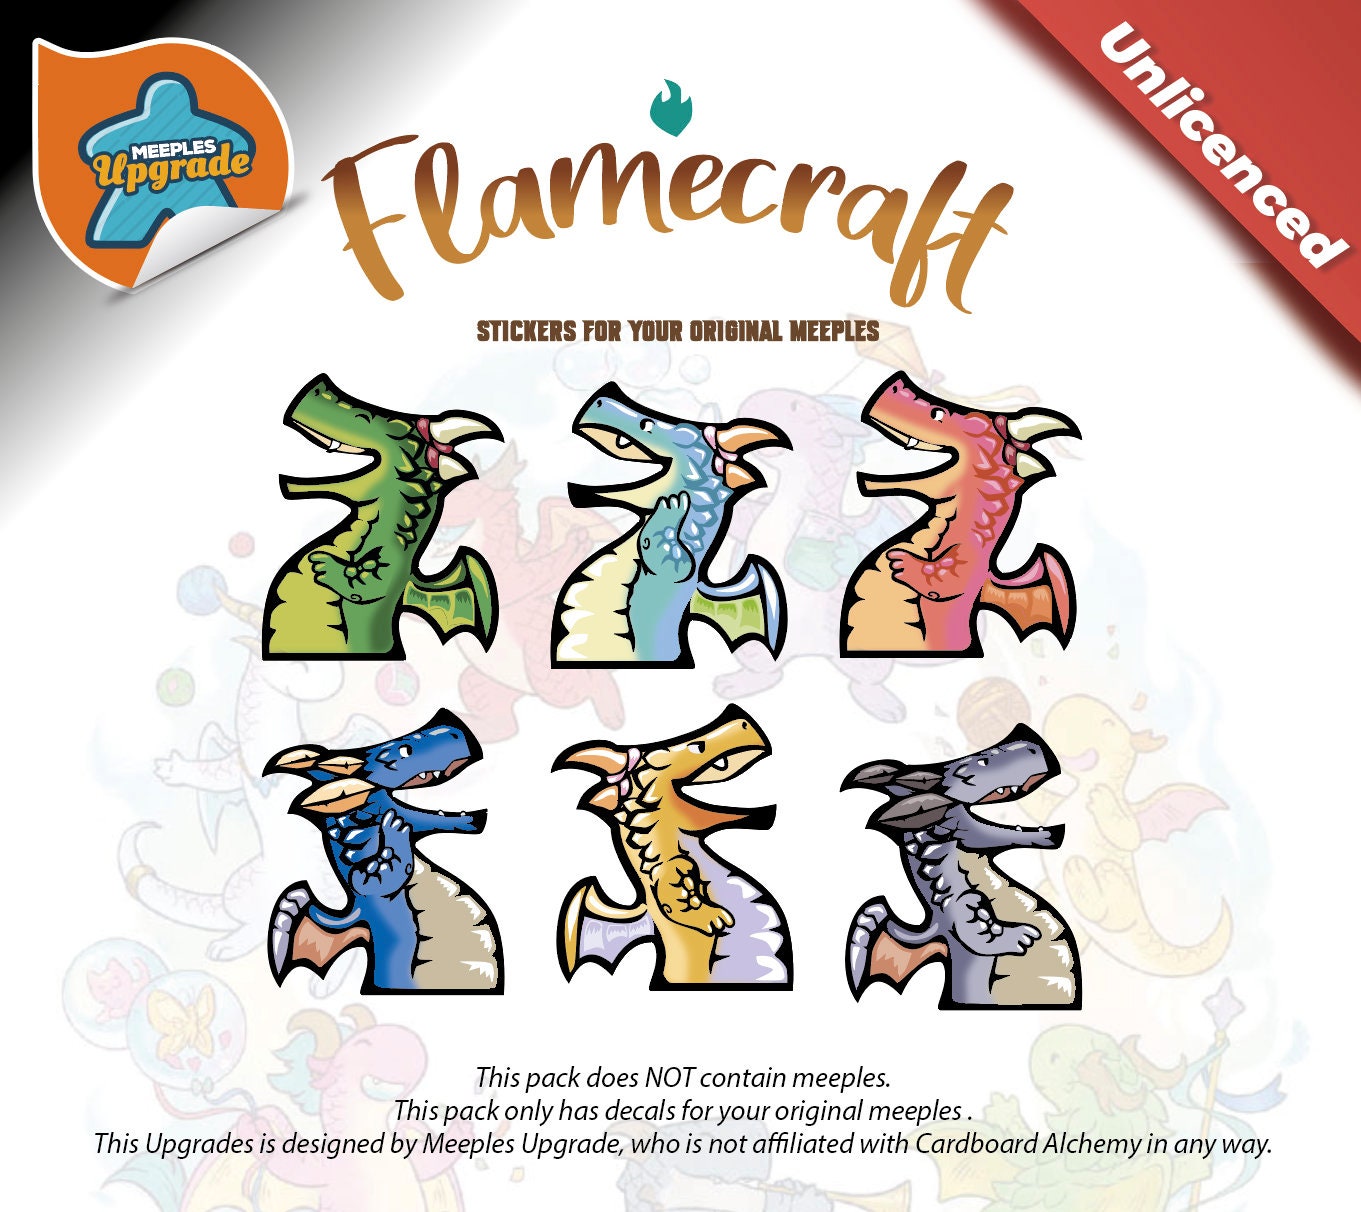 FLAMECRAFT Meeples Upgrade Kit Stickers Decals Kit Premium